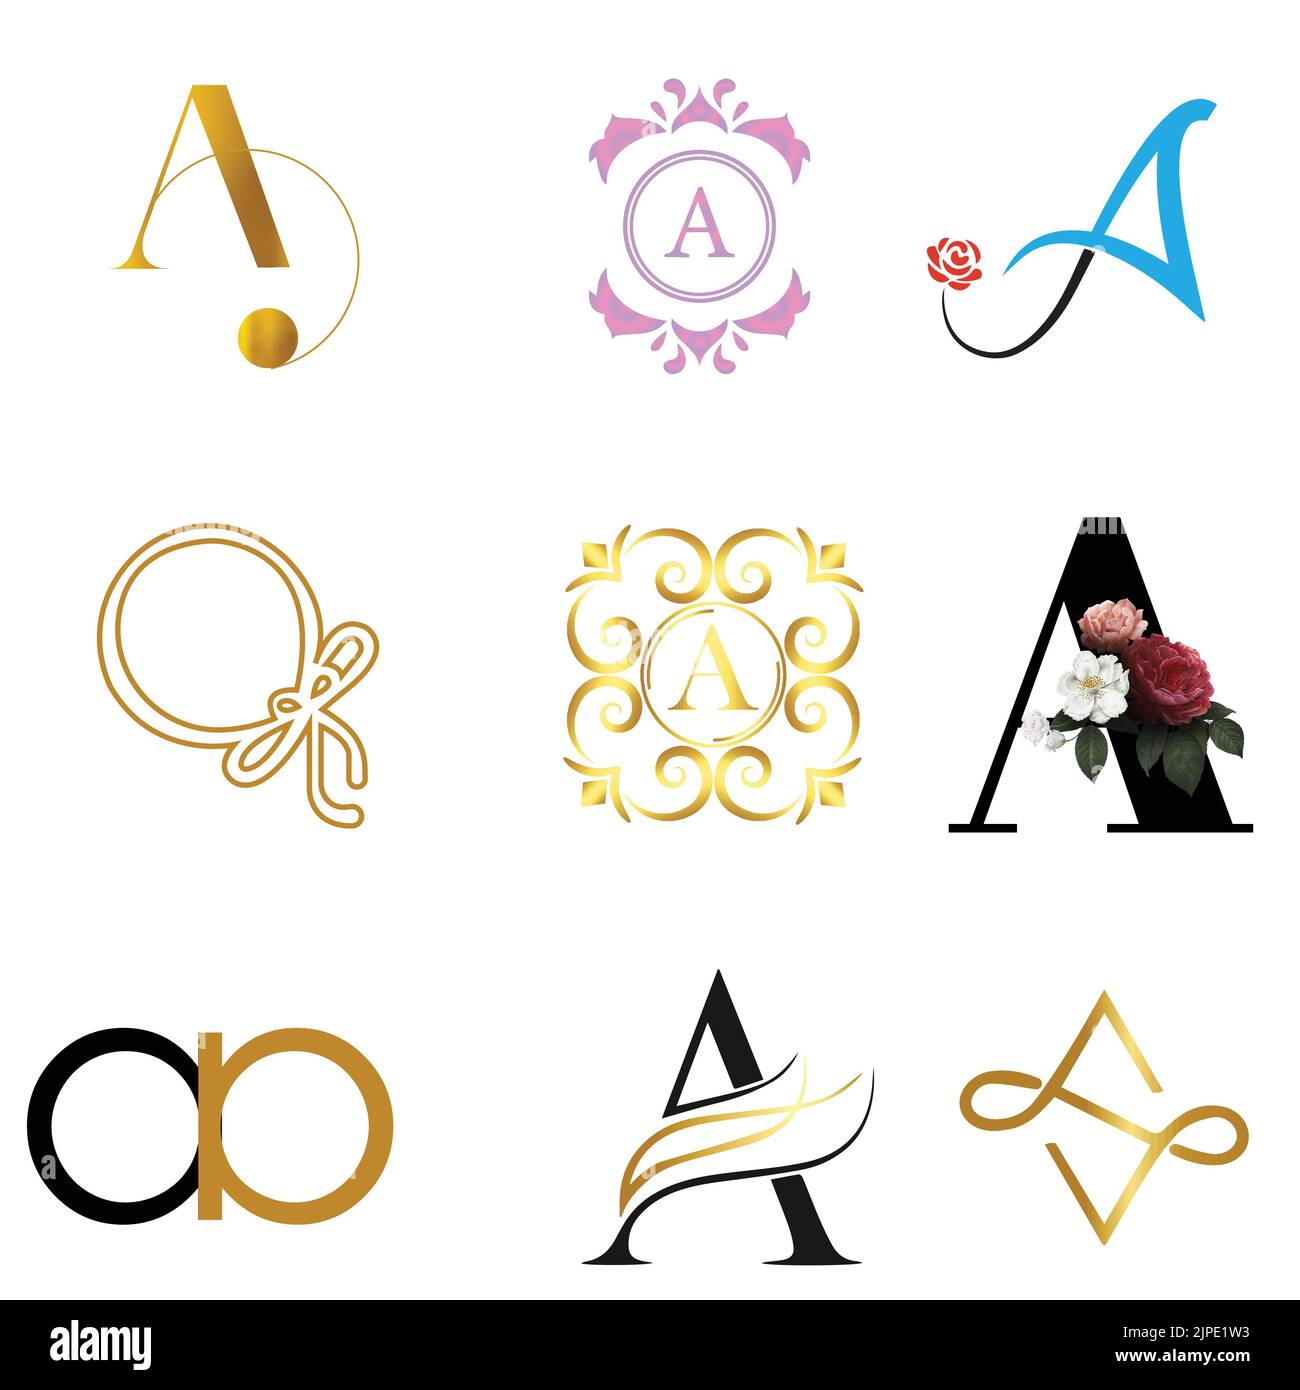 Eine Vektordarstellung einer Gruppe von Buchstaben-A-Logos in verschiedenen Designs auf weißem Hintergrund Stock Vektor